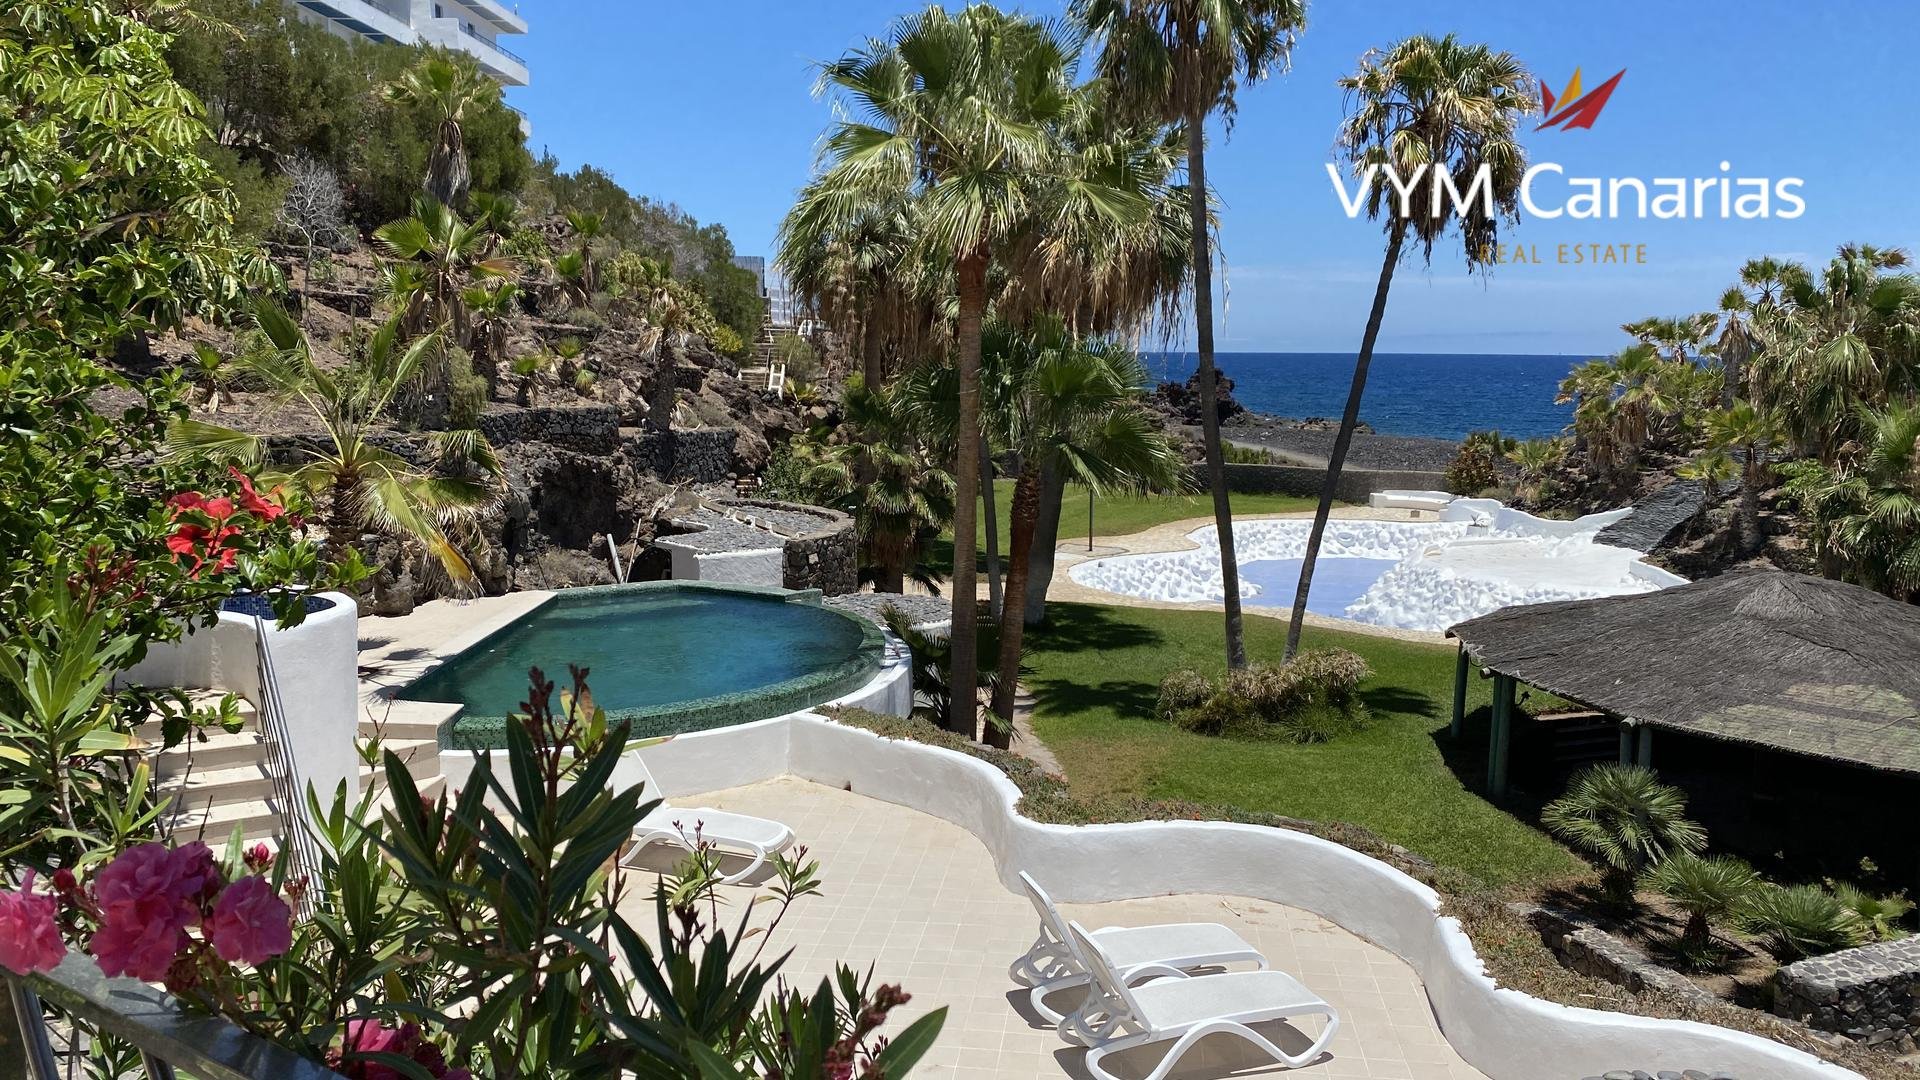 Villa in Golf del Sur marketed by Vym Canarias